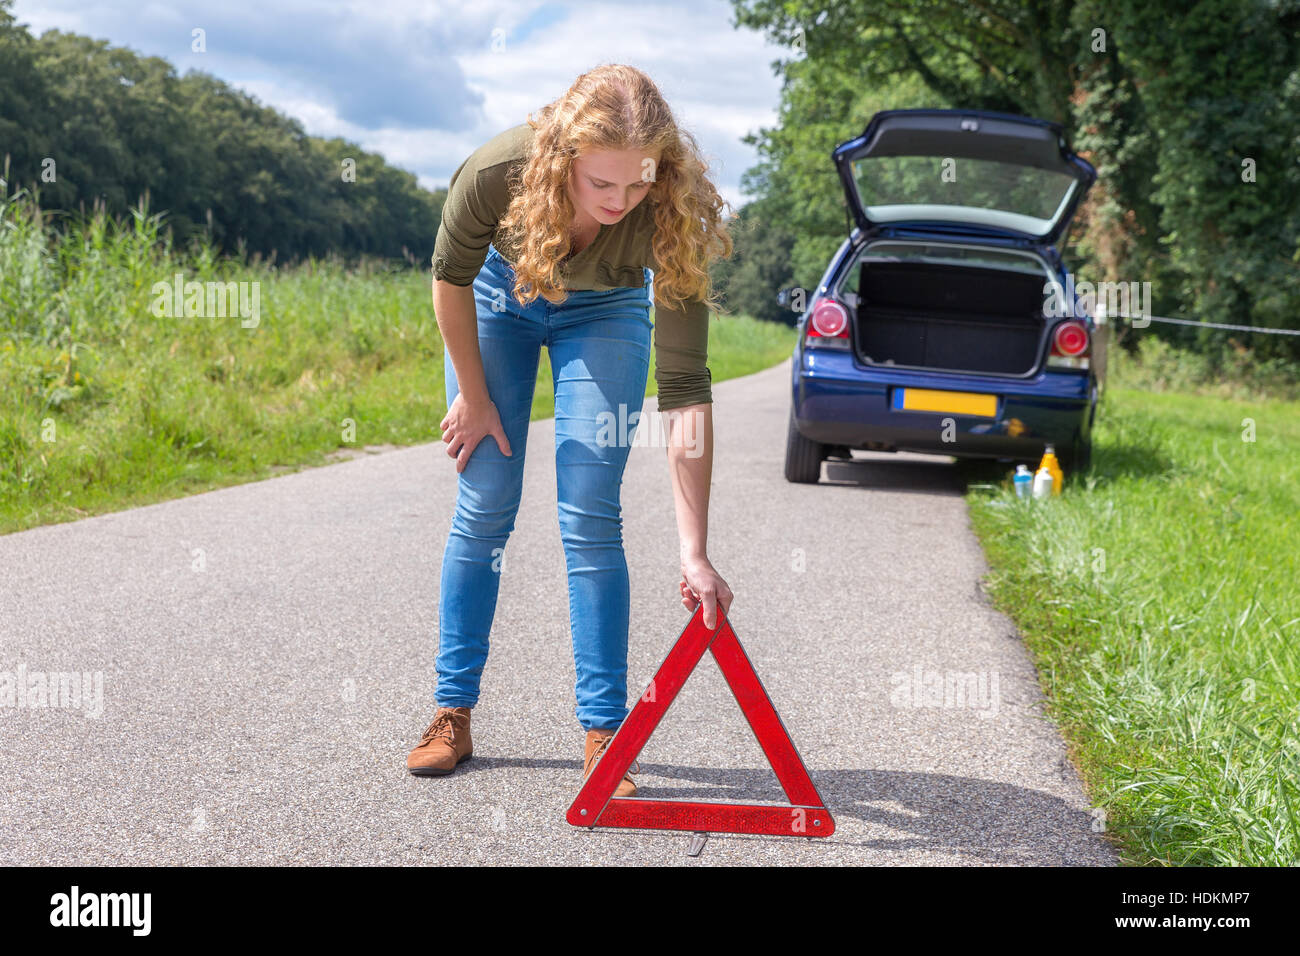 Europeo teenage girl collocando il triangolo di segnalazione sulla strada di campagna Foto Stock